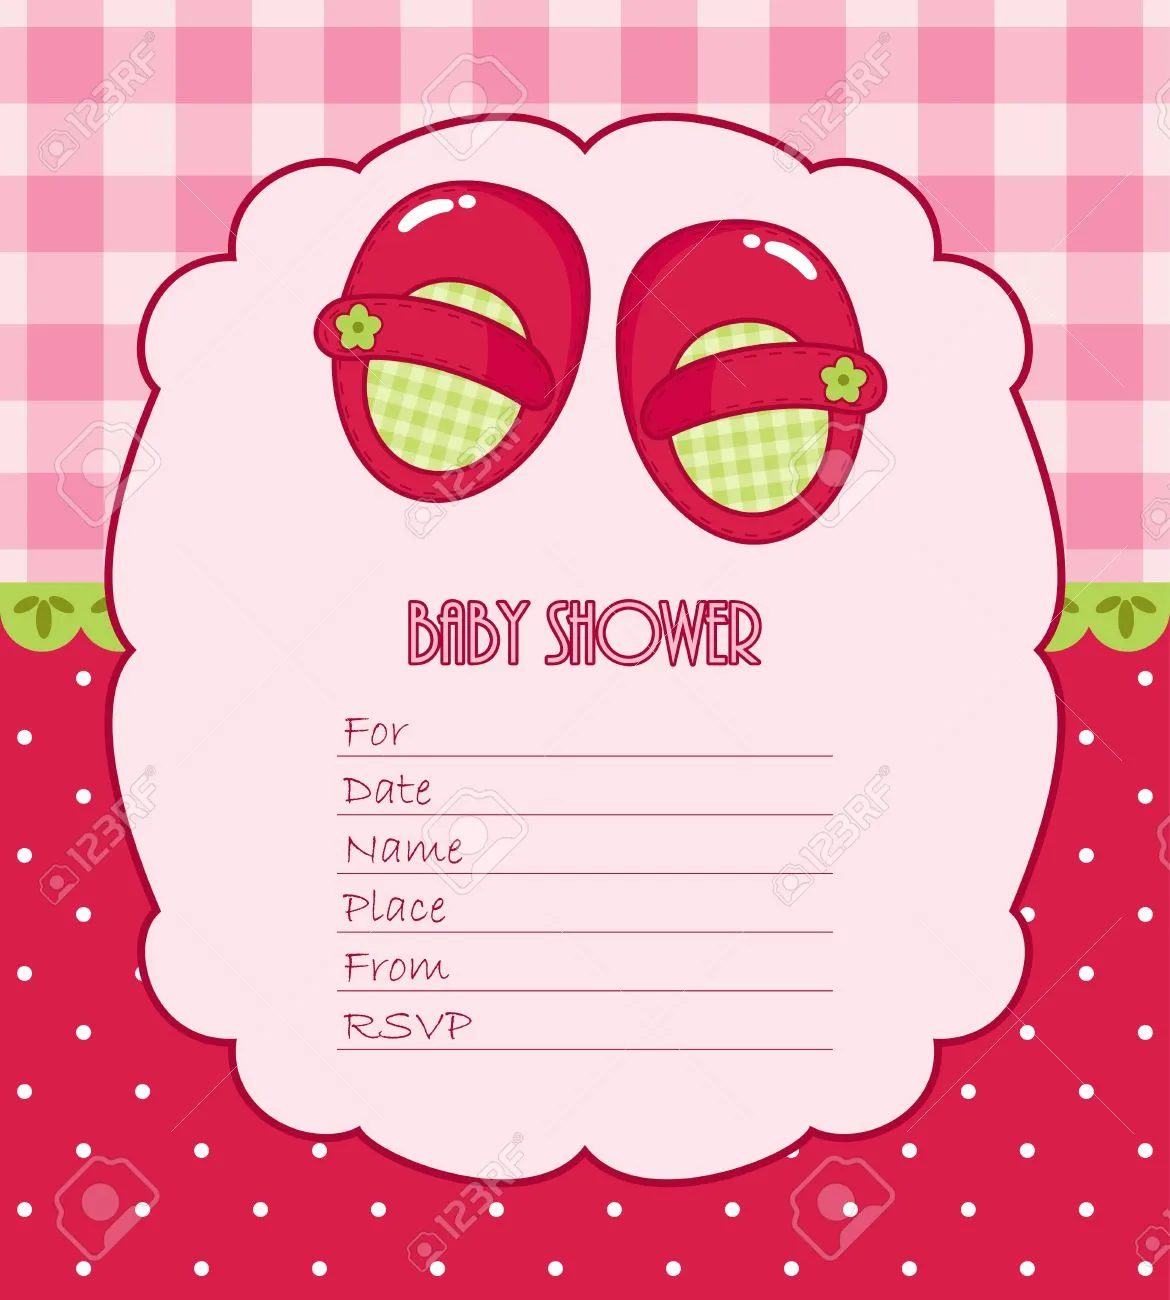 Baby Shower De Niño Imágenes De Archivo, Vectores, Baby Shower De ...